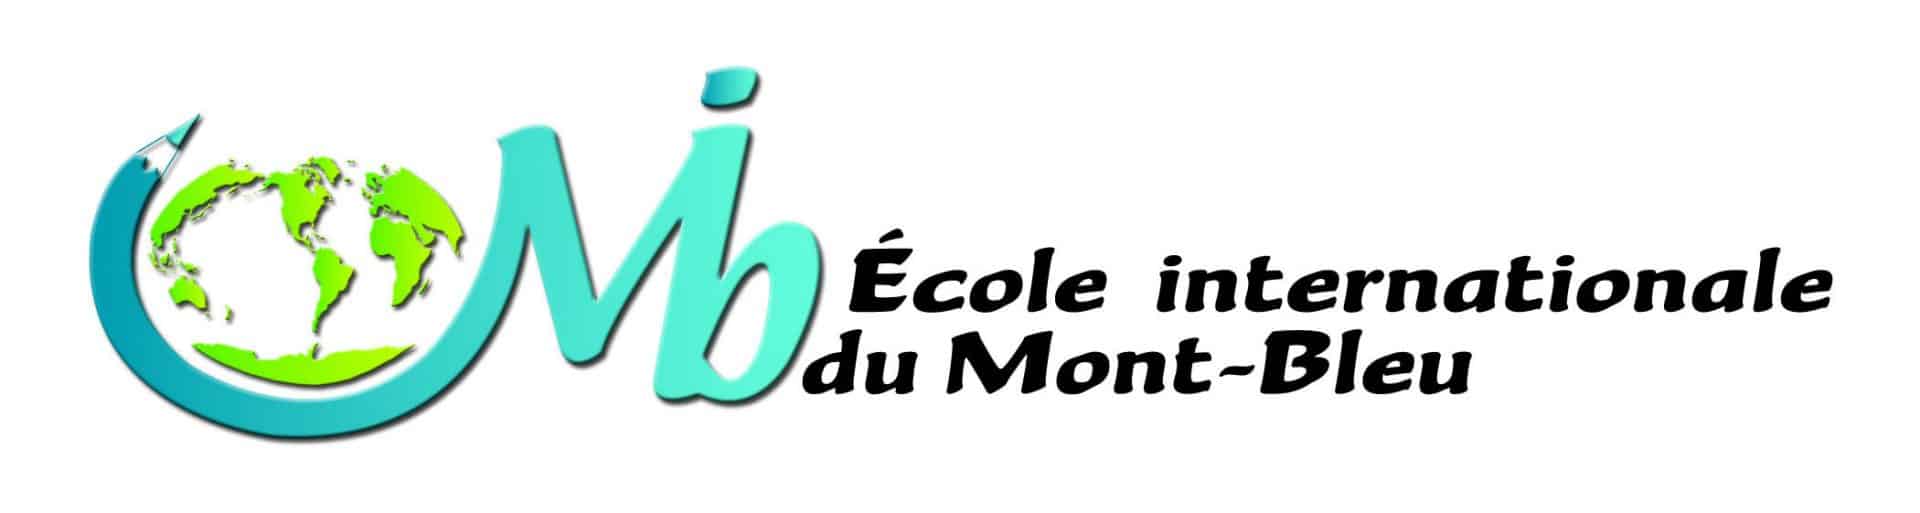 logo école internationale du mont-bleu